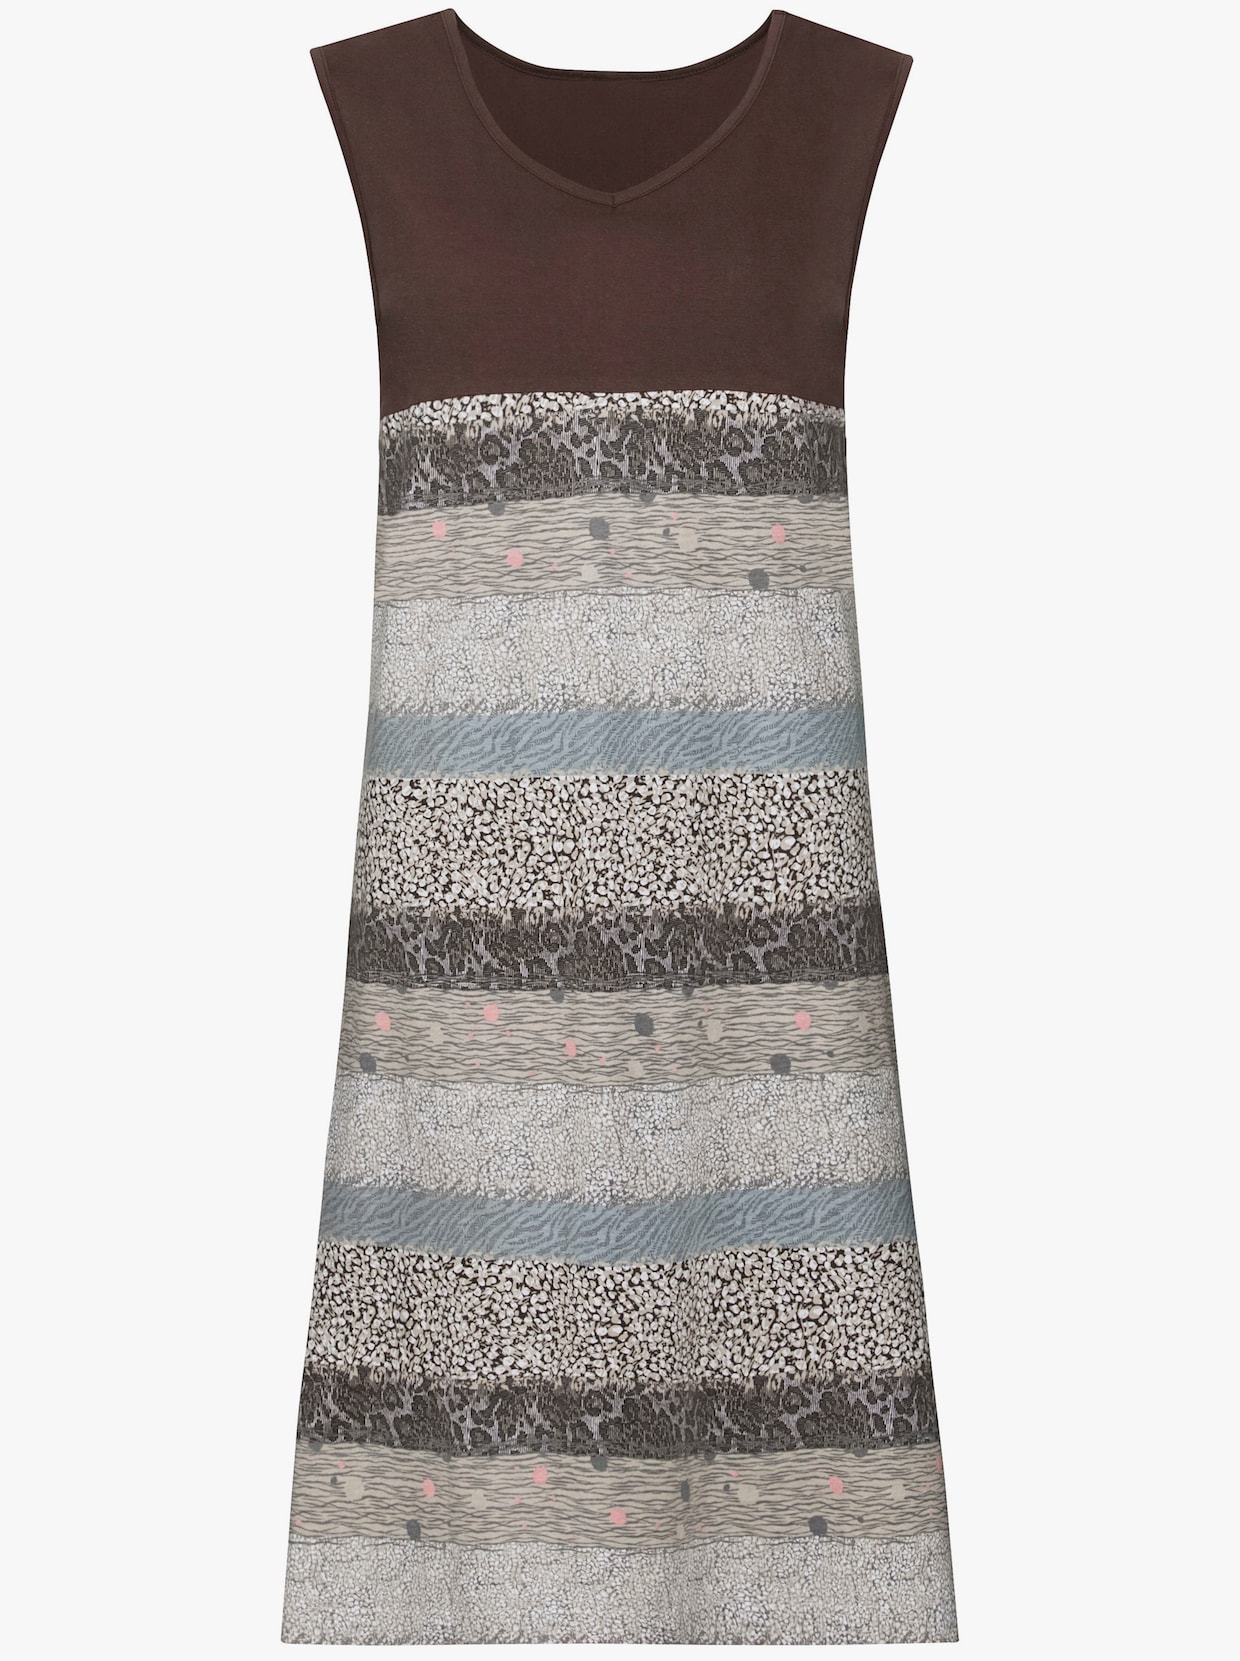 Letné šaty - Sivo-hnedá potlač